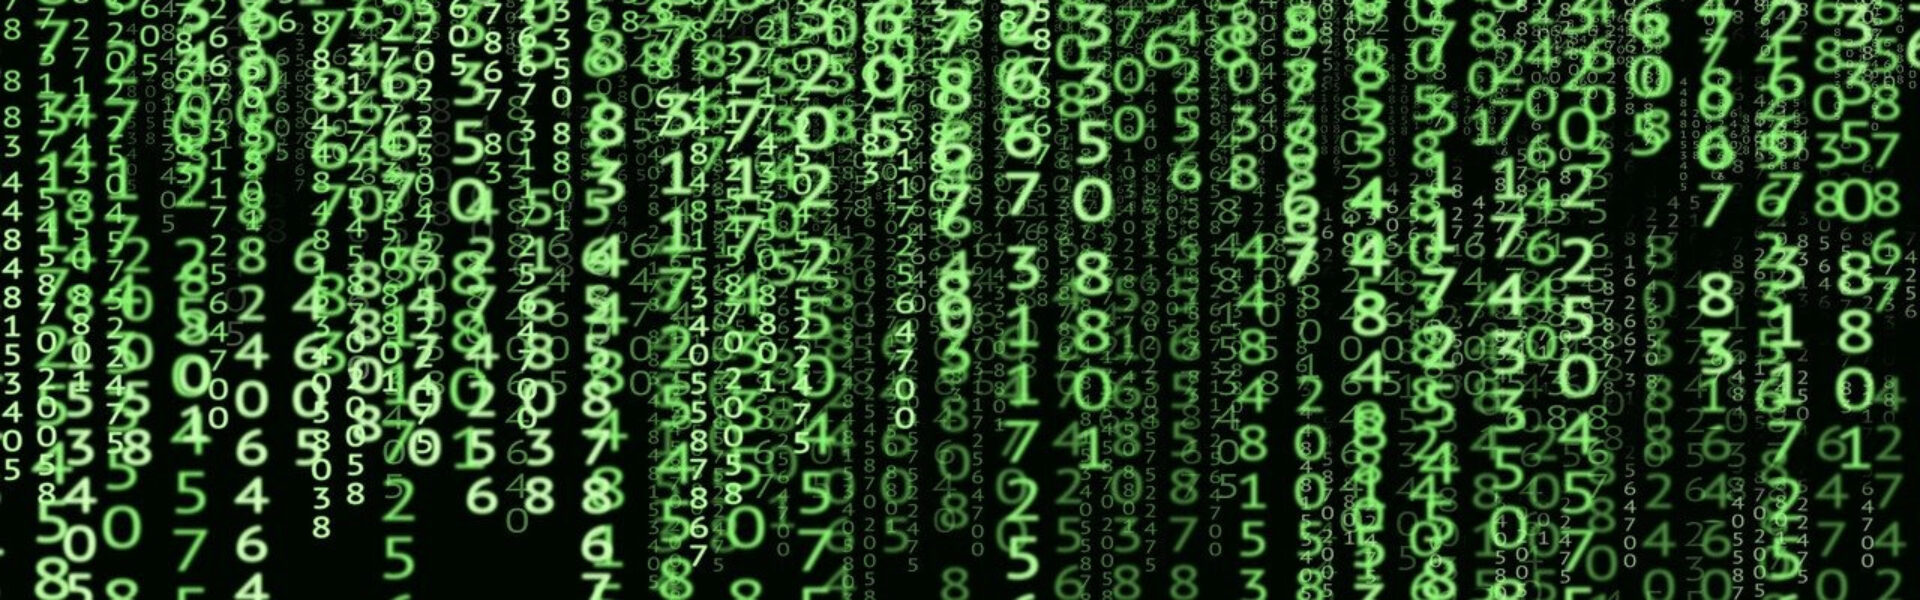 Kodernes verden. Grønne tal på sort computerbaggrund.